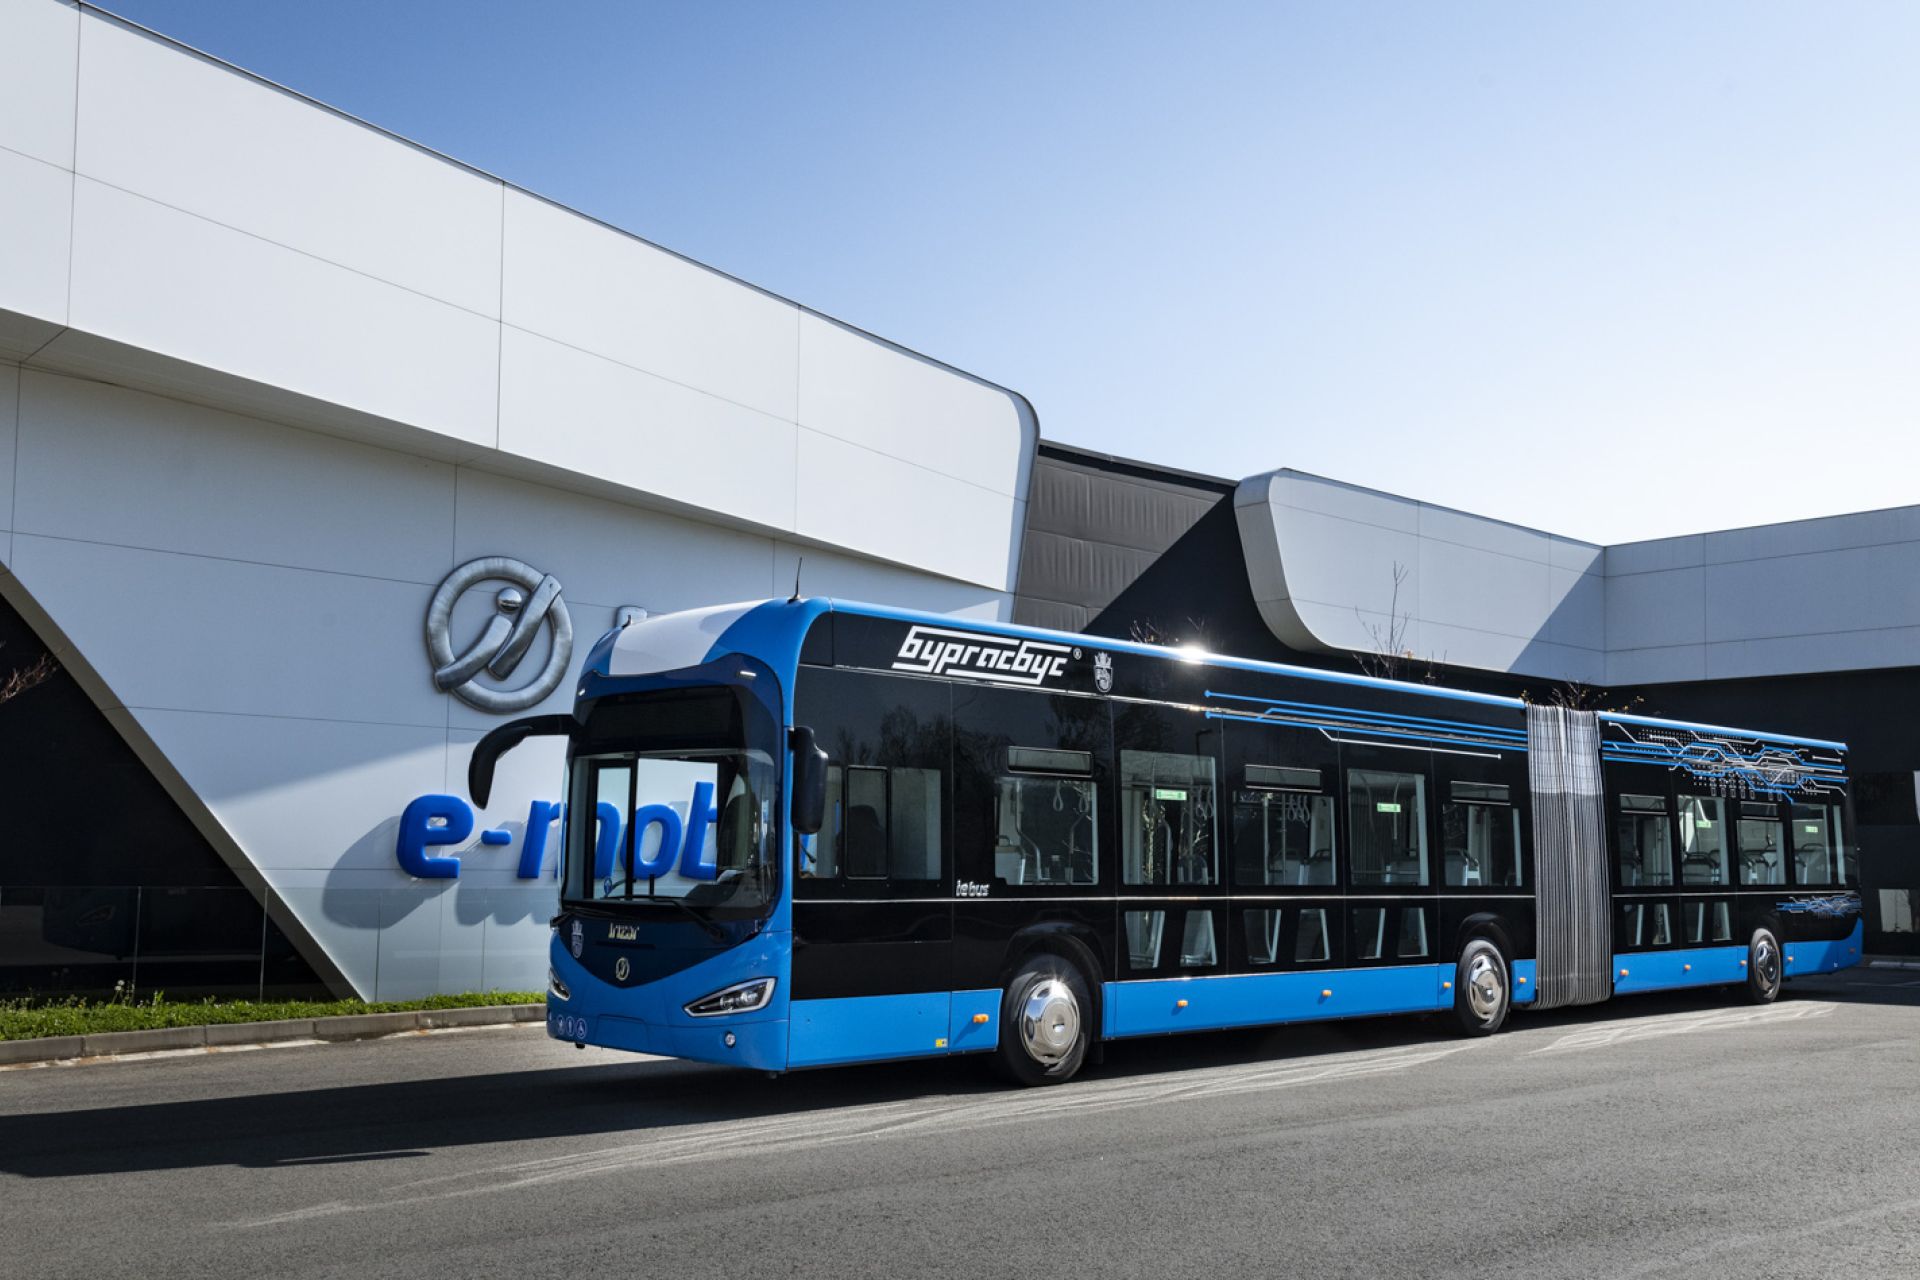 Premiers autobus électriques d’Irizar e-mobility présentés dans la ville de Burgas, en Bulgarie